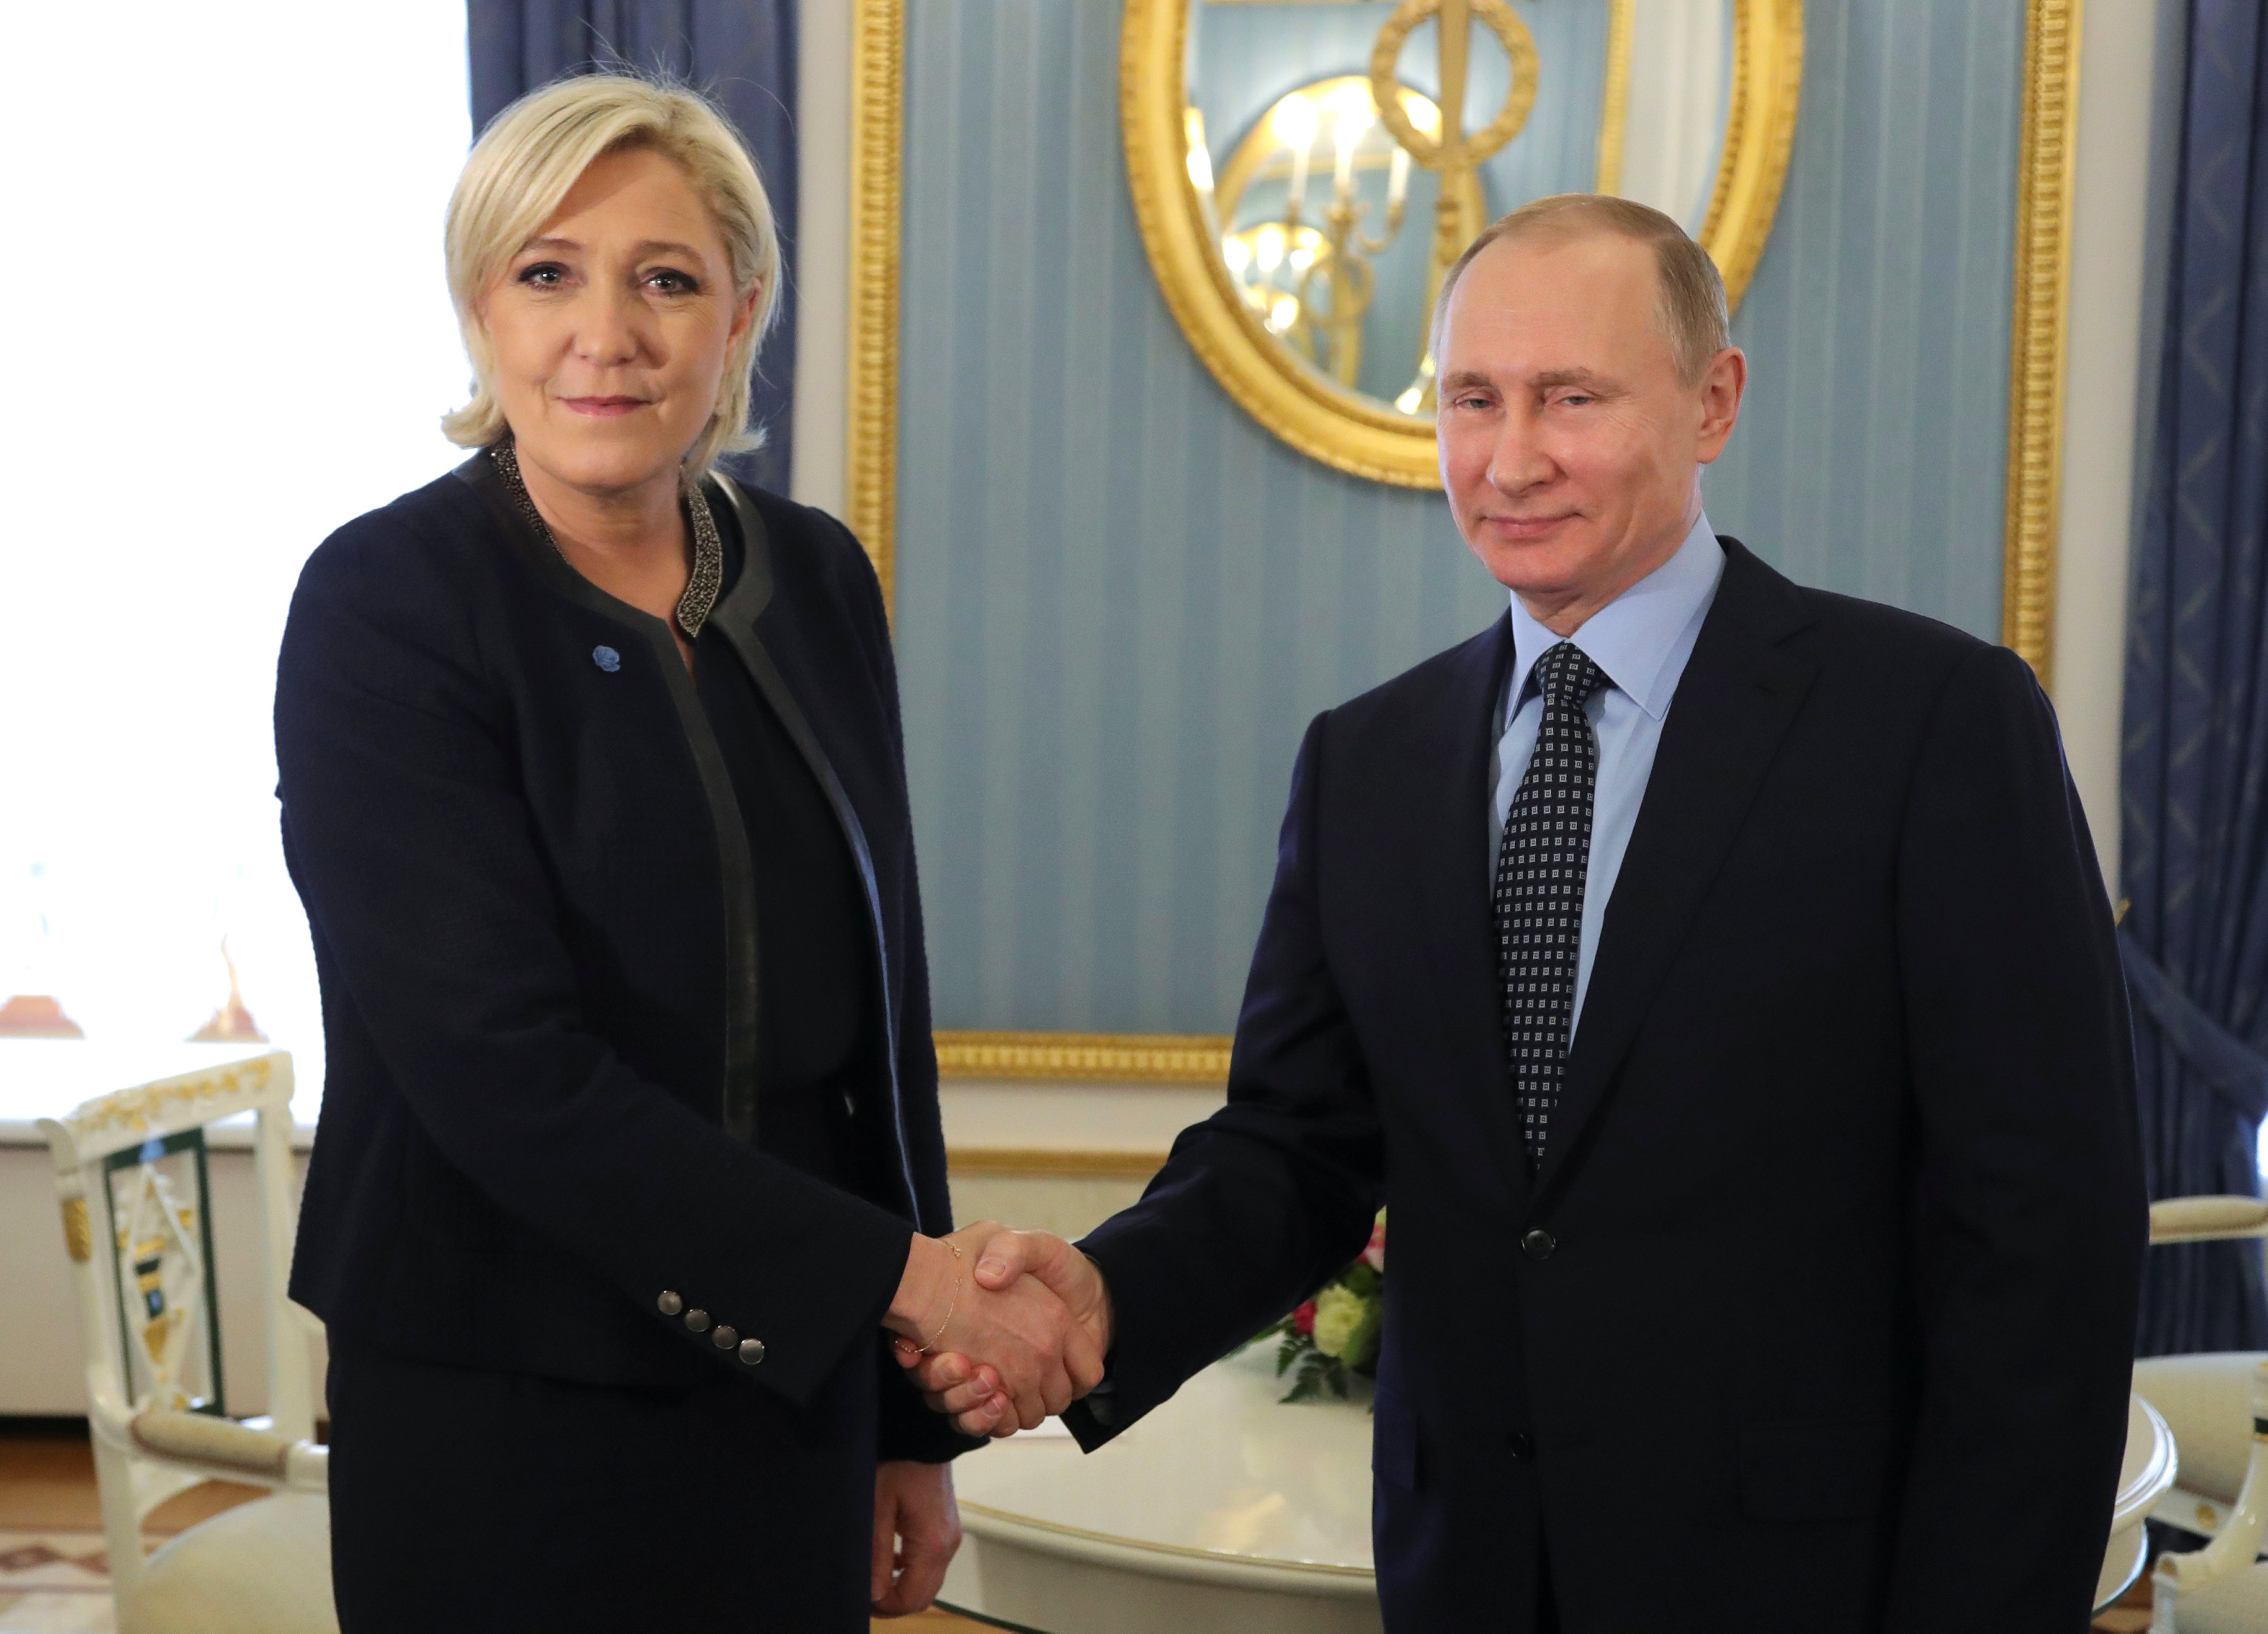 Le Pen dijo que se opone a la lista negra de la UE que prohíbe a ciudadanos rusos, incluidos legisladores, entrar en los países miembros.